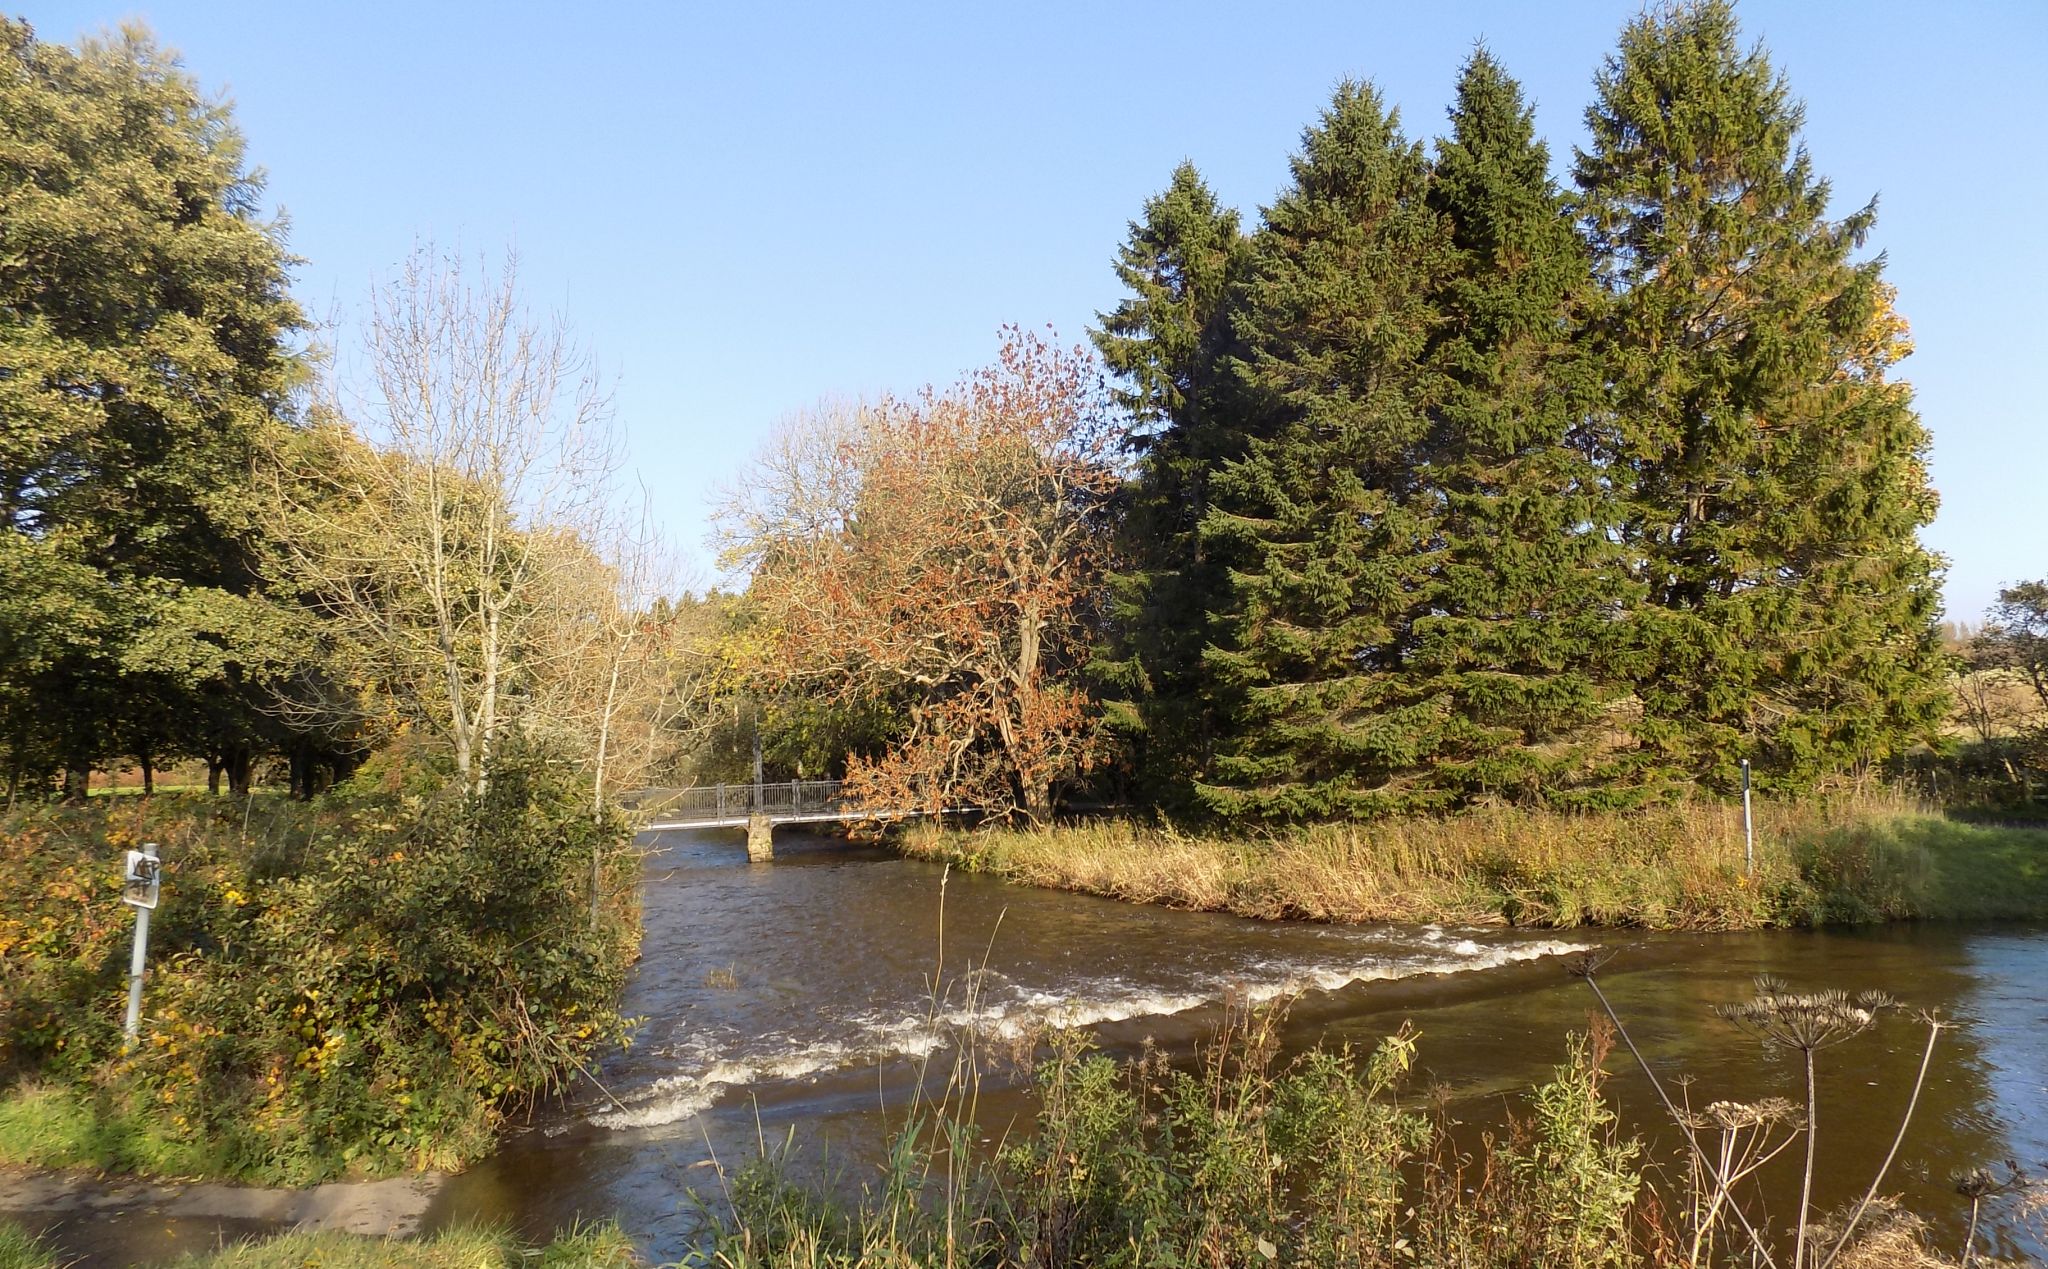 Lugton Water in Eglinton Country Park